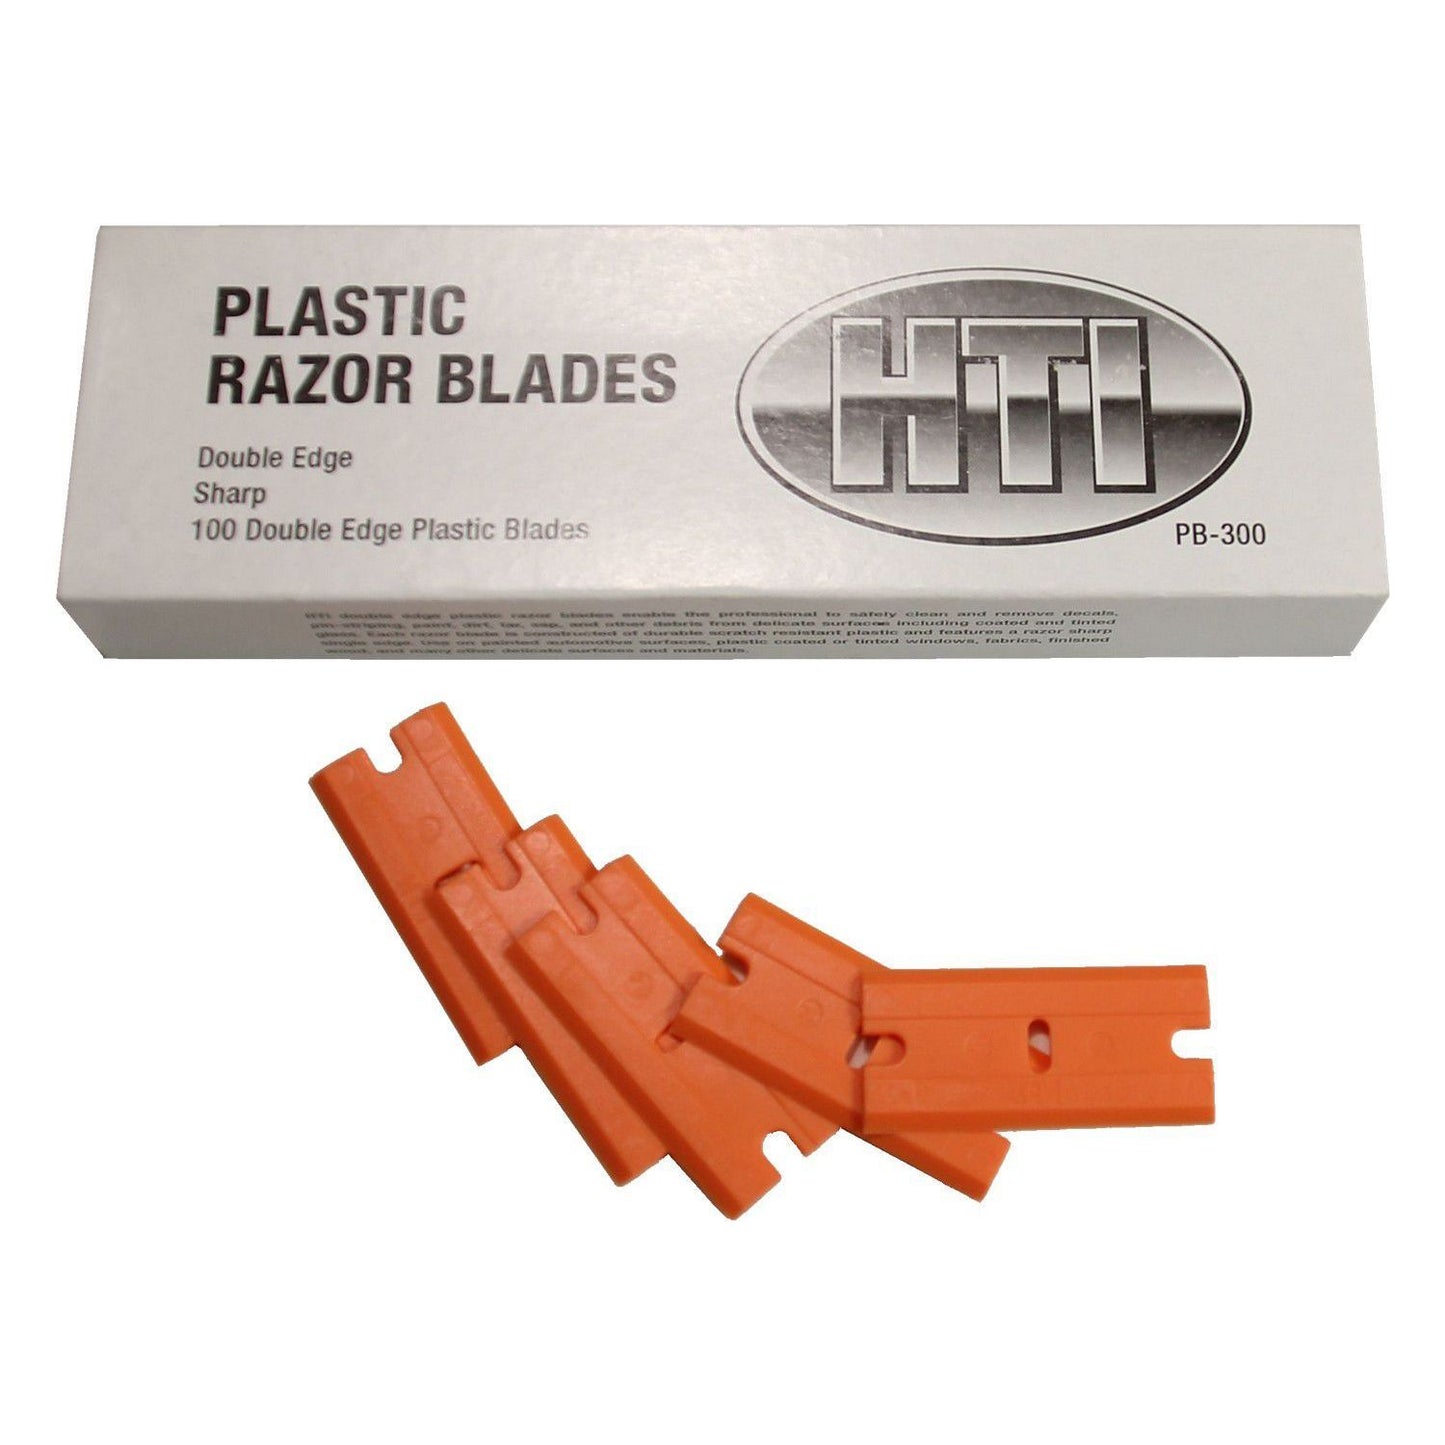 Double Edge Plastic Razor Blades